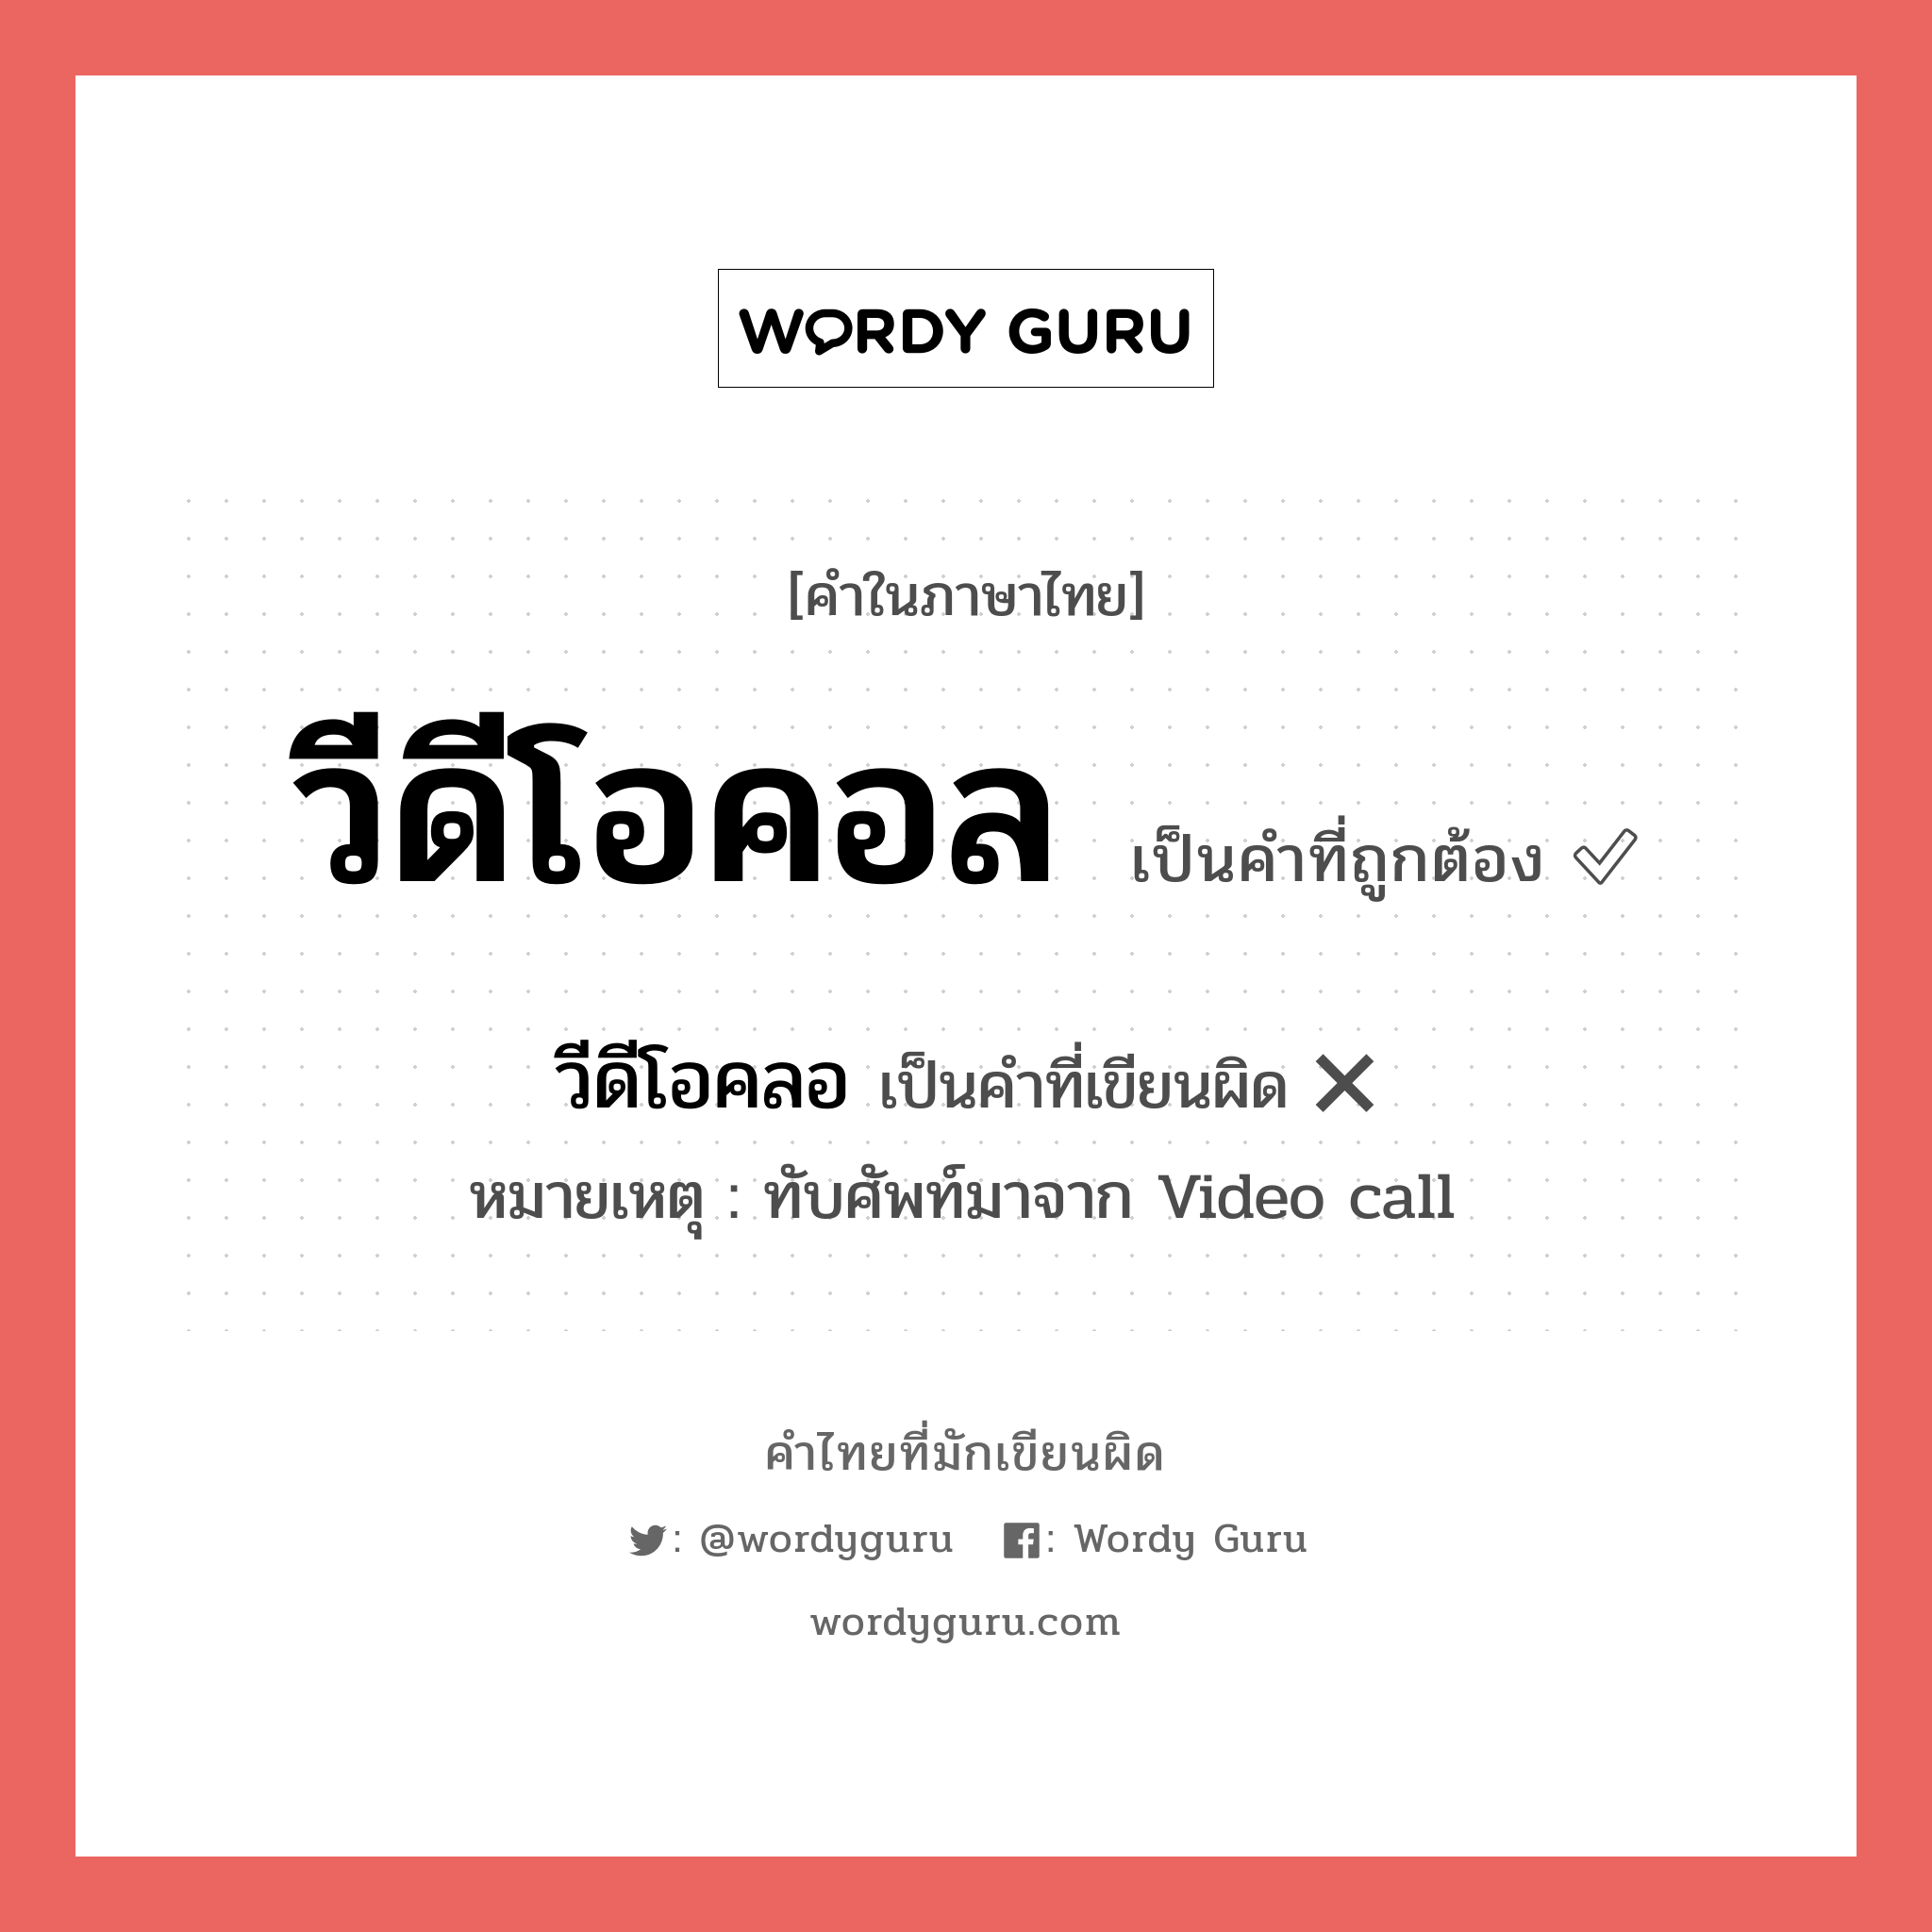 วีดีโอคอล หรือ วีดีโอคลอ เขียนยังไง? คำไหนเขียนถูก?, คำในภาษาไทยที่มักเขียนผิด วีดีโอคอล คำที่ผิด ❌ วีดีโอคลอ หมายเหตุ ทับศัพท์มาจาก Video call หมวด การติดต่อสื่อสาร หมวด การติดต่อสื่อสาร